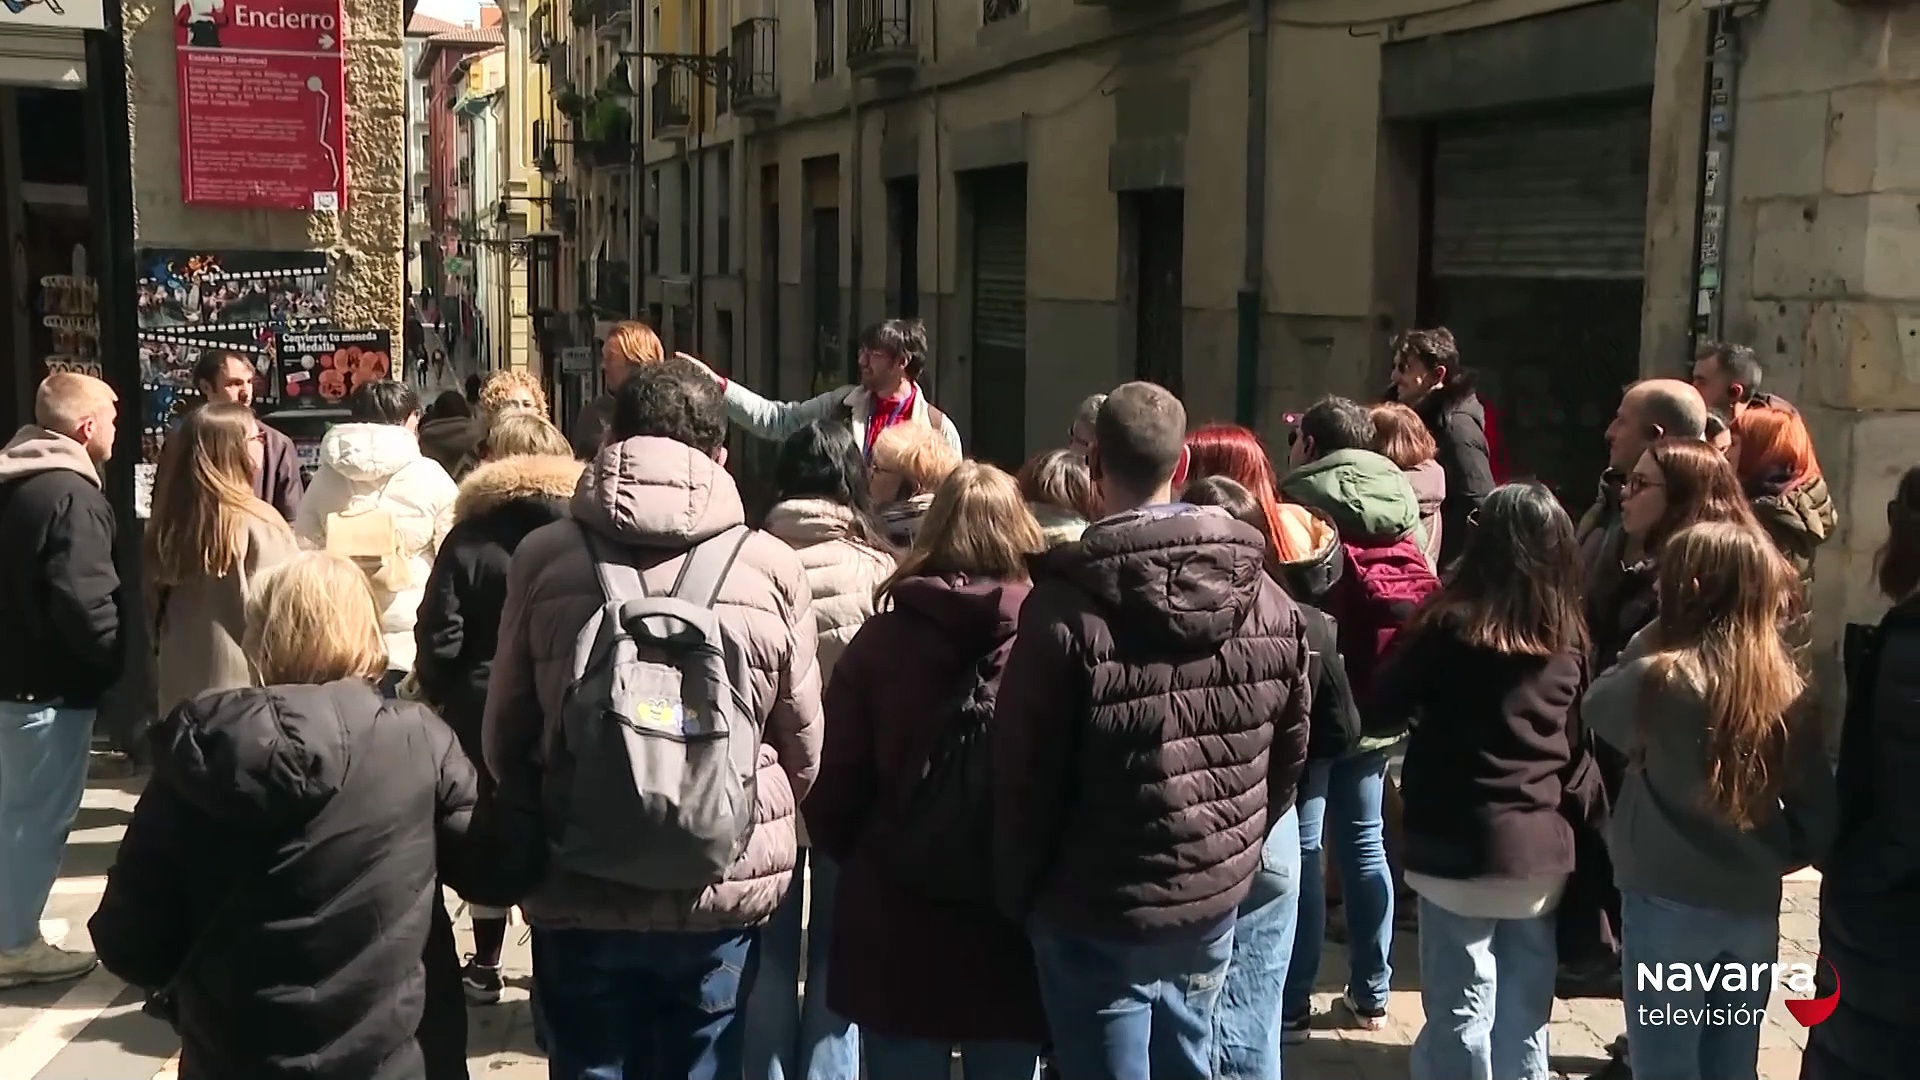 Las calles de Pamplona se llenan de turistas por Semana Santa